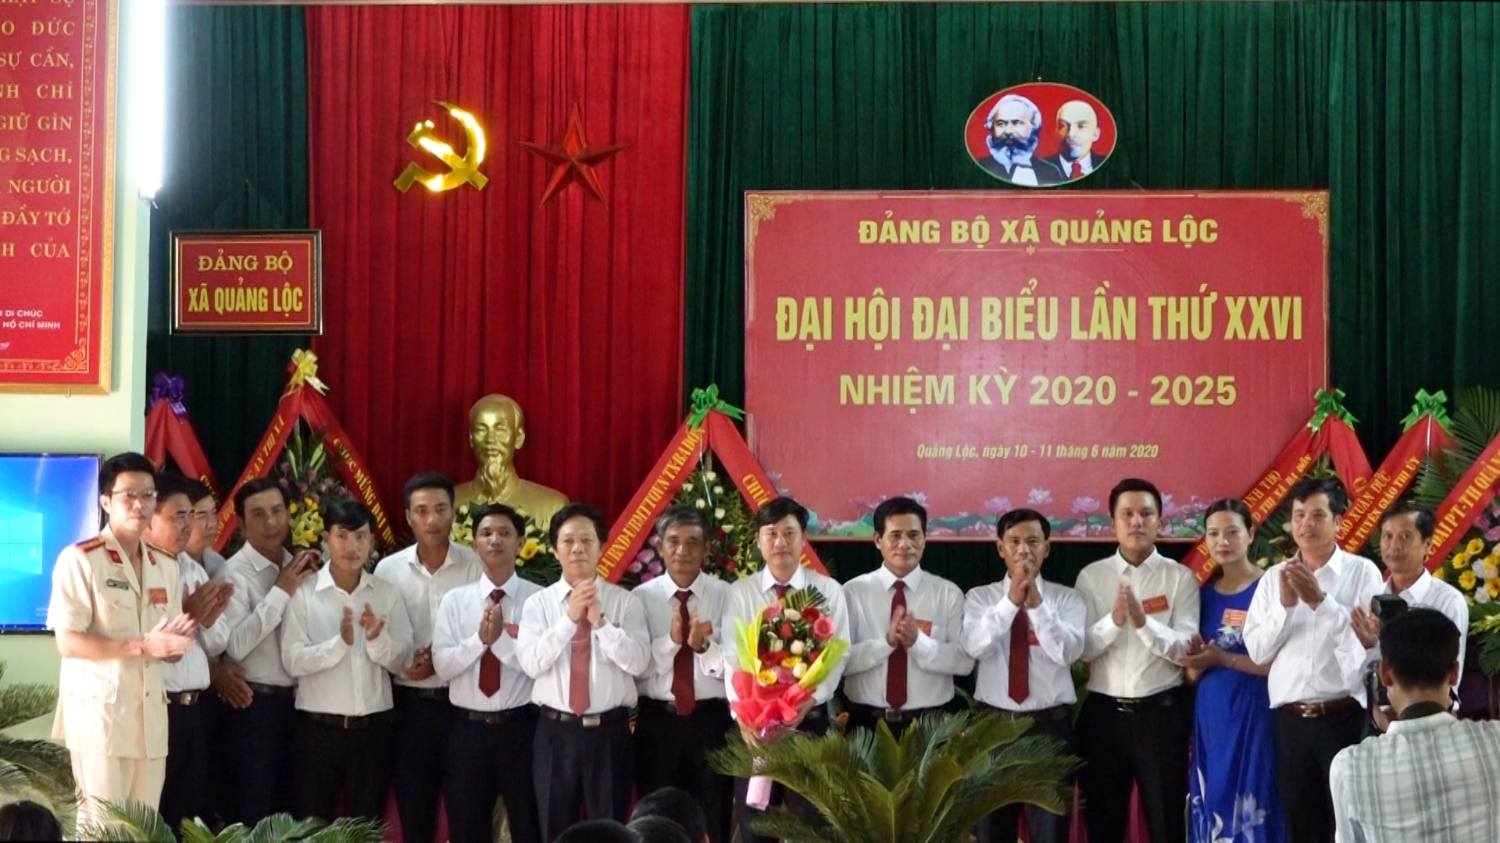 BCH Đảng bộ xã Quảng Lộc nhiệm kỳ 2020 2025 ra mắt và nhận nhiệm vụ